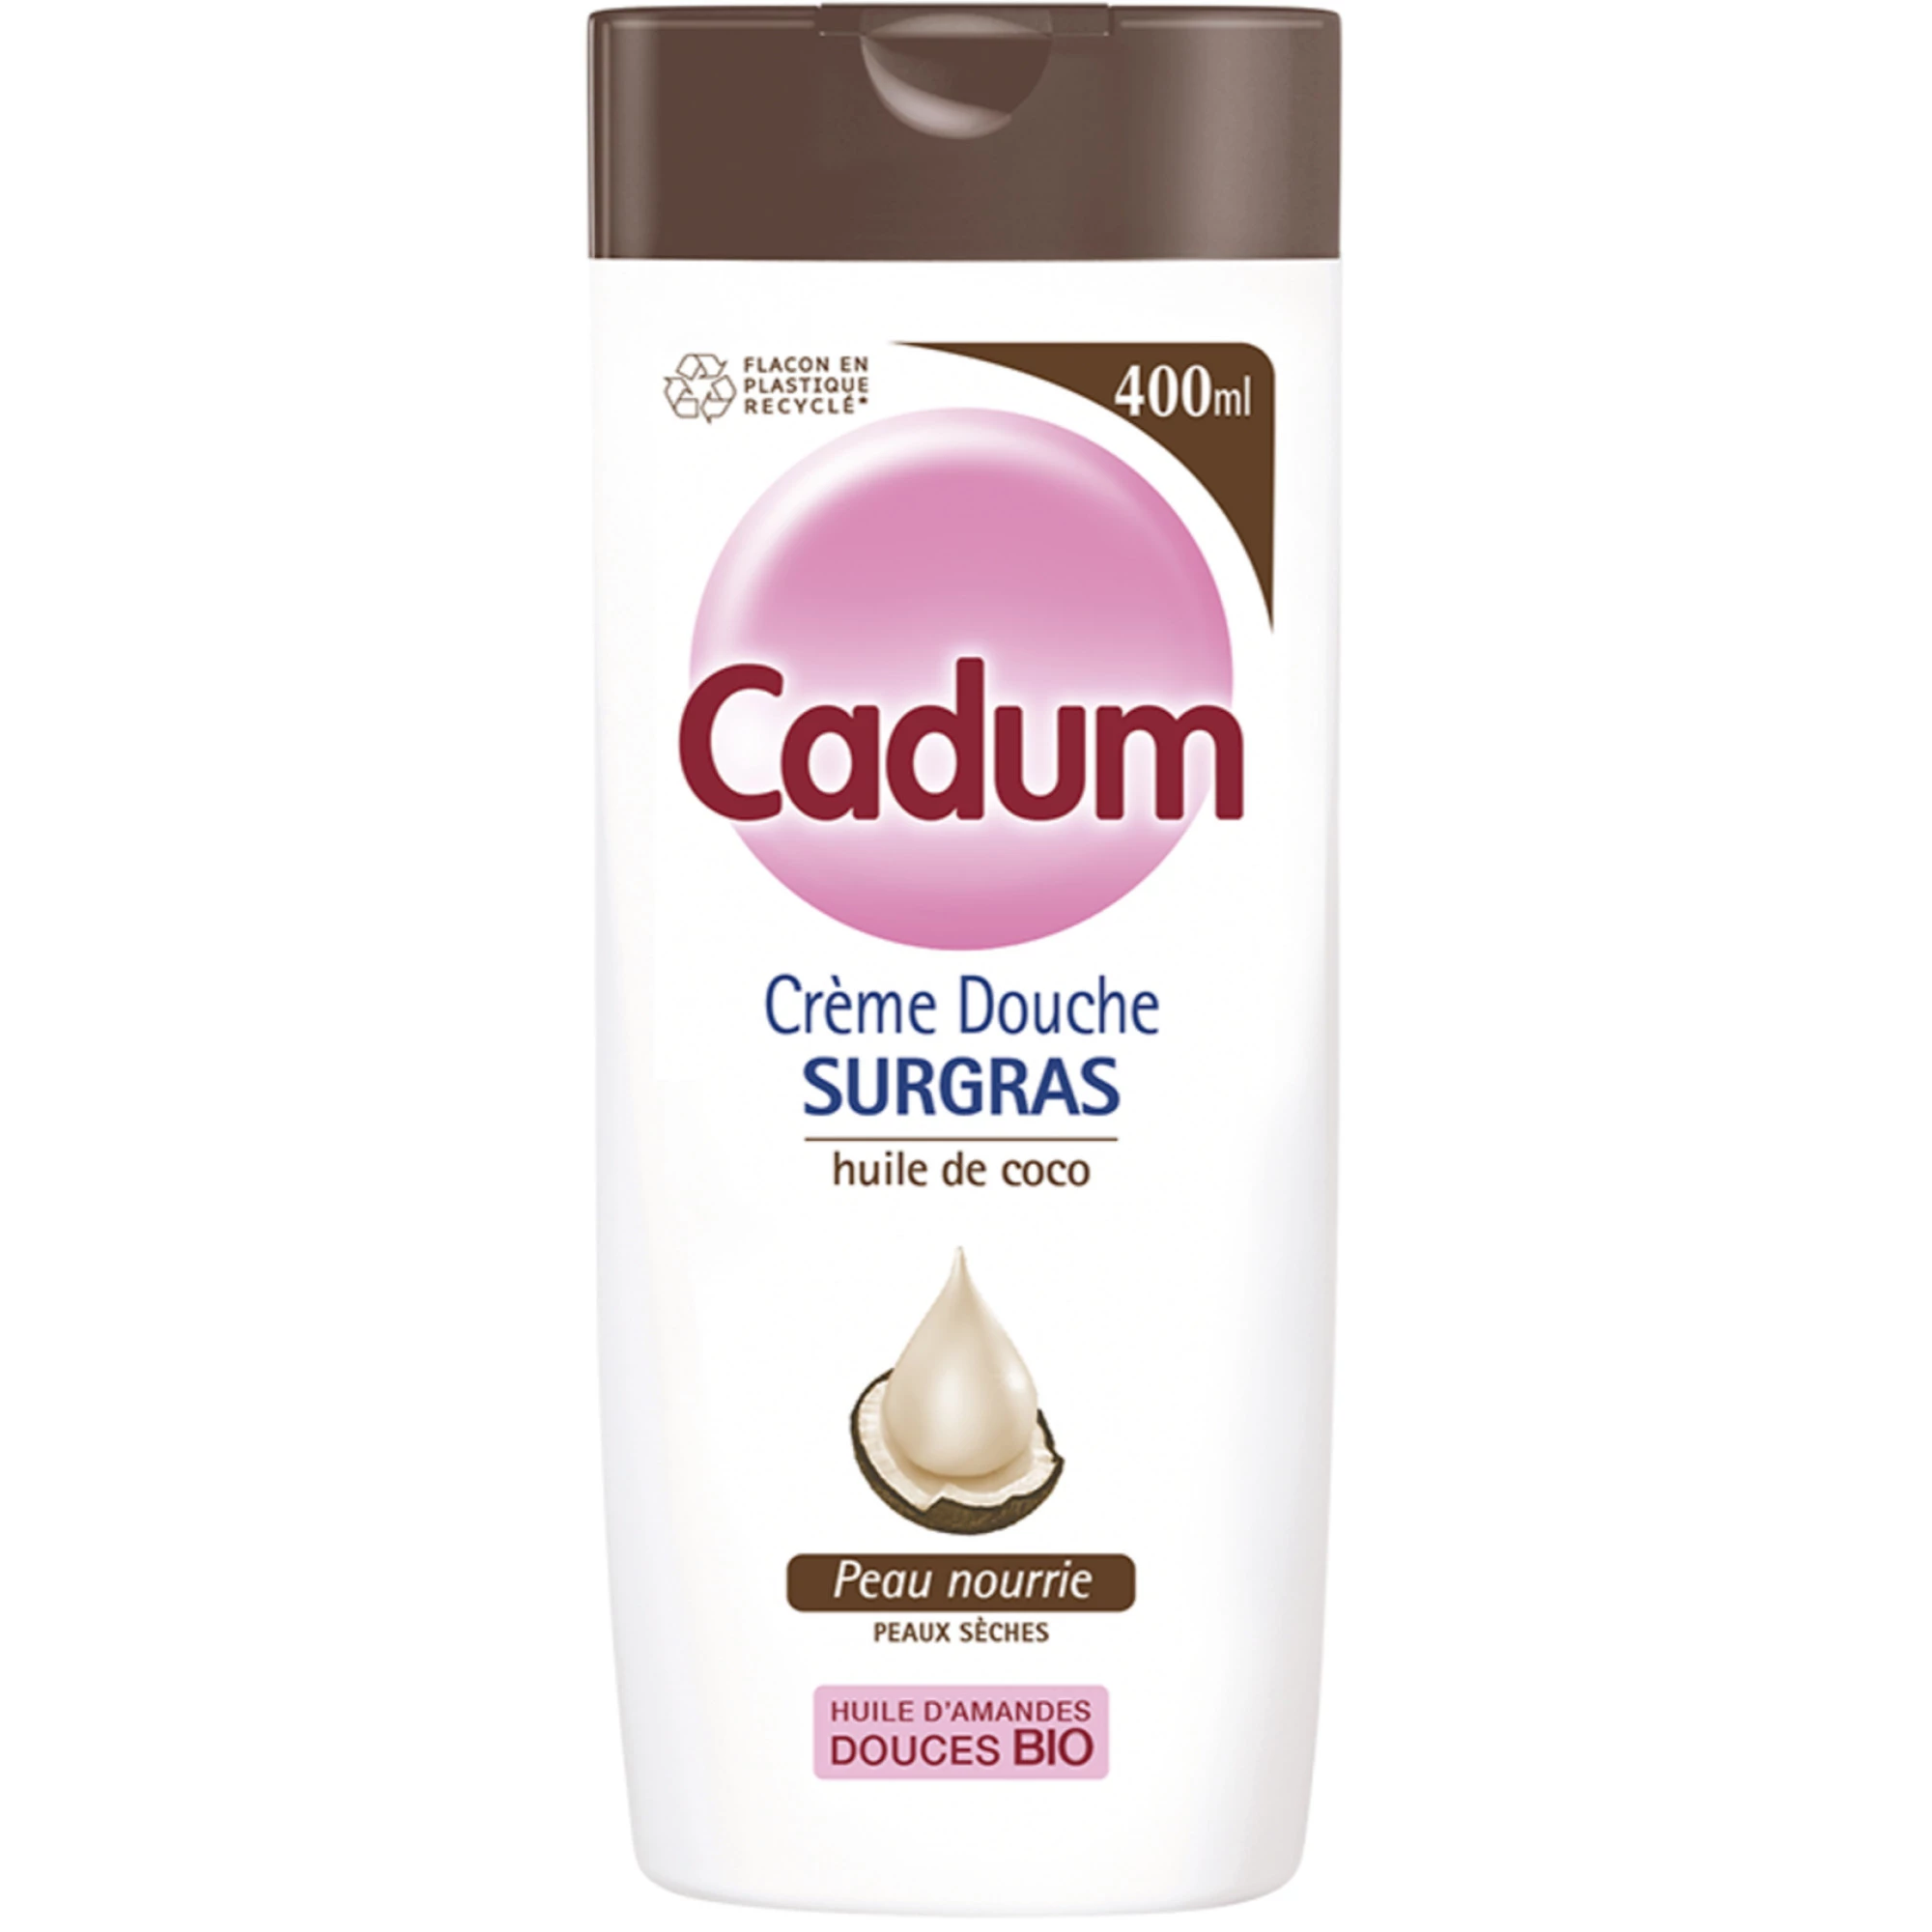 Coconut surgras douchecrème - CADUM